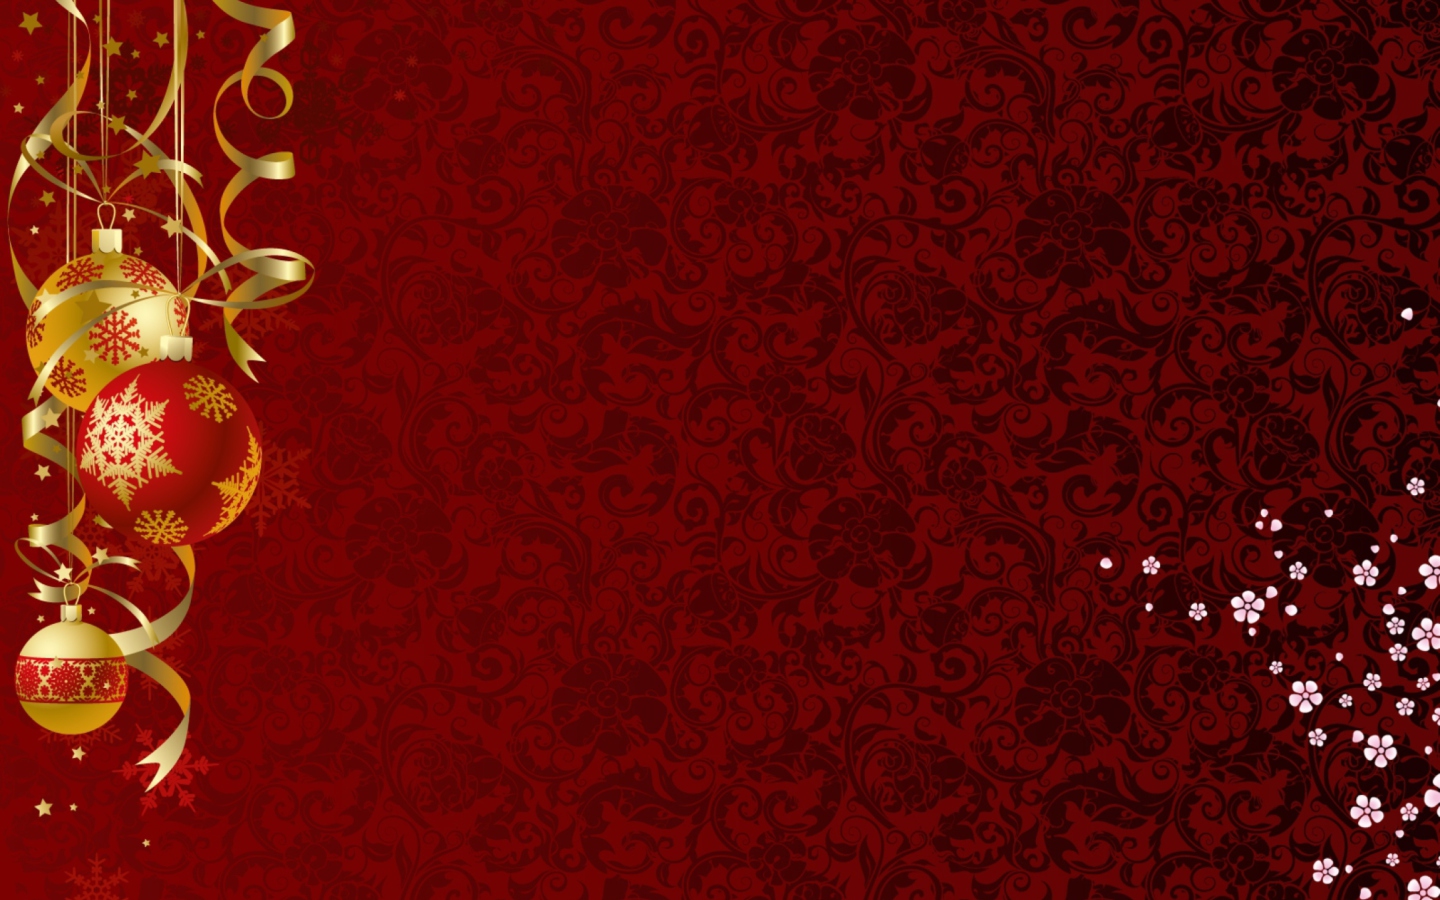 Red Xmas Ornaments wallpaper 1440x900